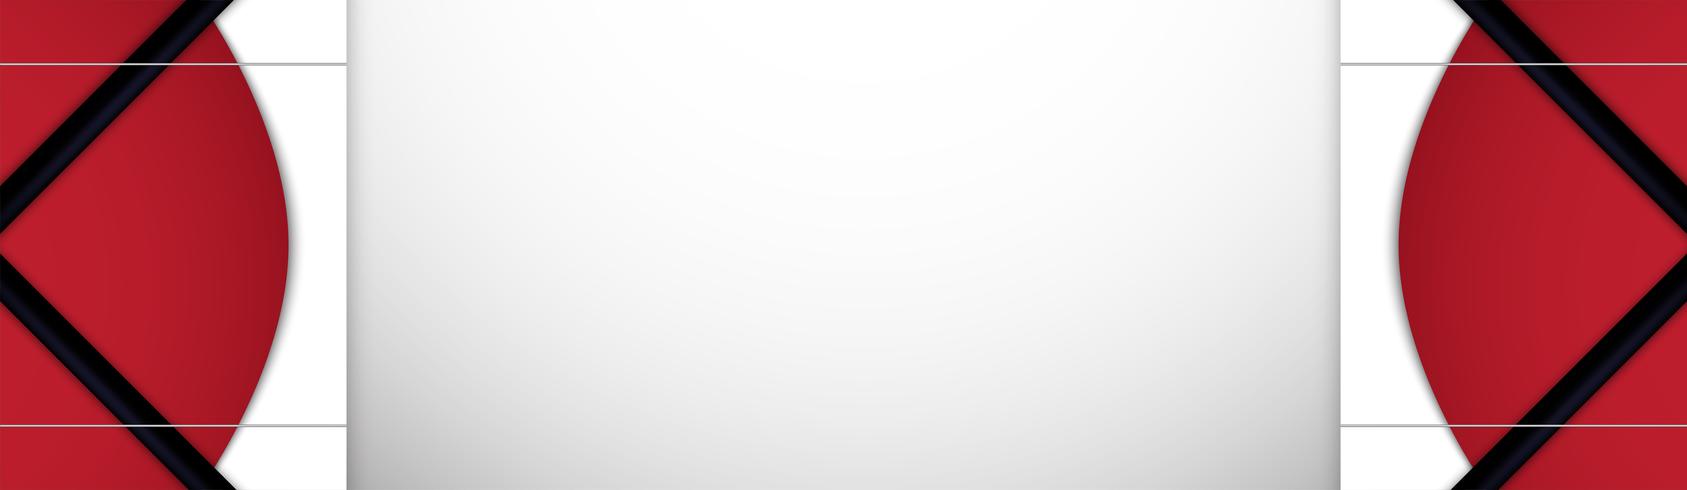 Abstrakter blauer Hintergrund in der erstklassigen indischen Art. Template-Design für Cover, Business-Präsentation, Web-Banner, Hochzeitseinladung und Luxusverpackungen. Vektorabbildung mit goldener Grenze. vektor